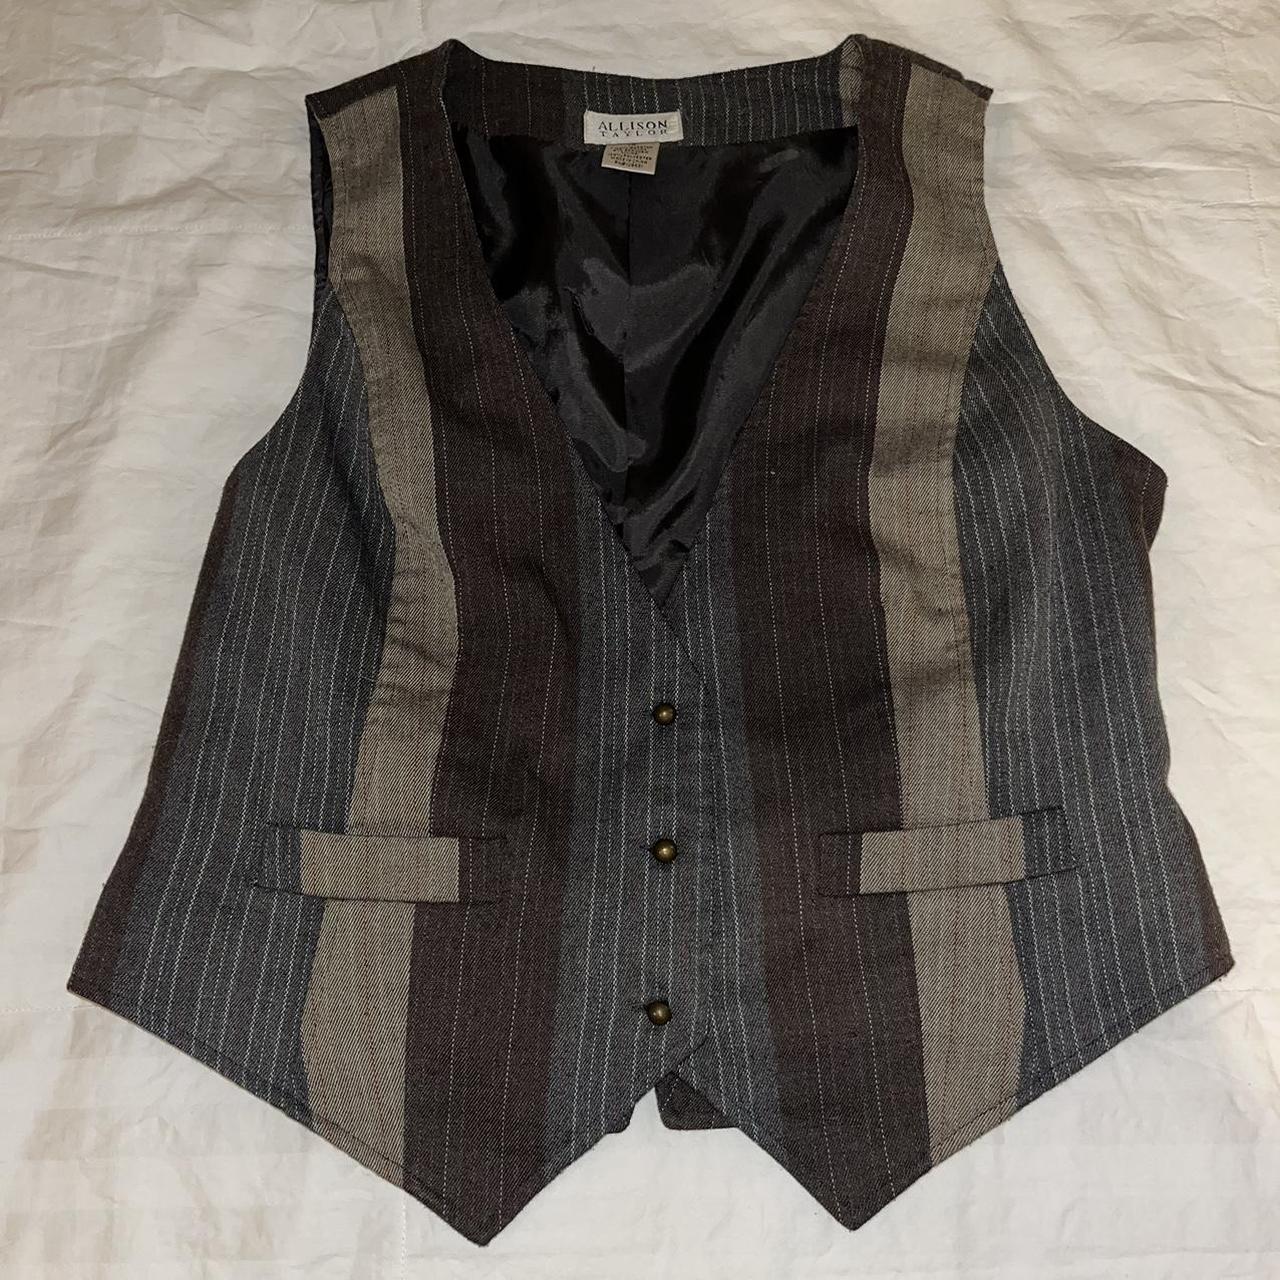 Vintage Allison Taylor striped vest -size 10 - Bust... - Depop